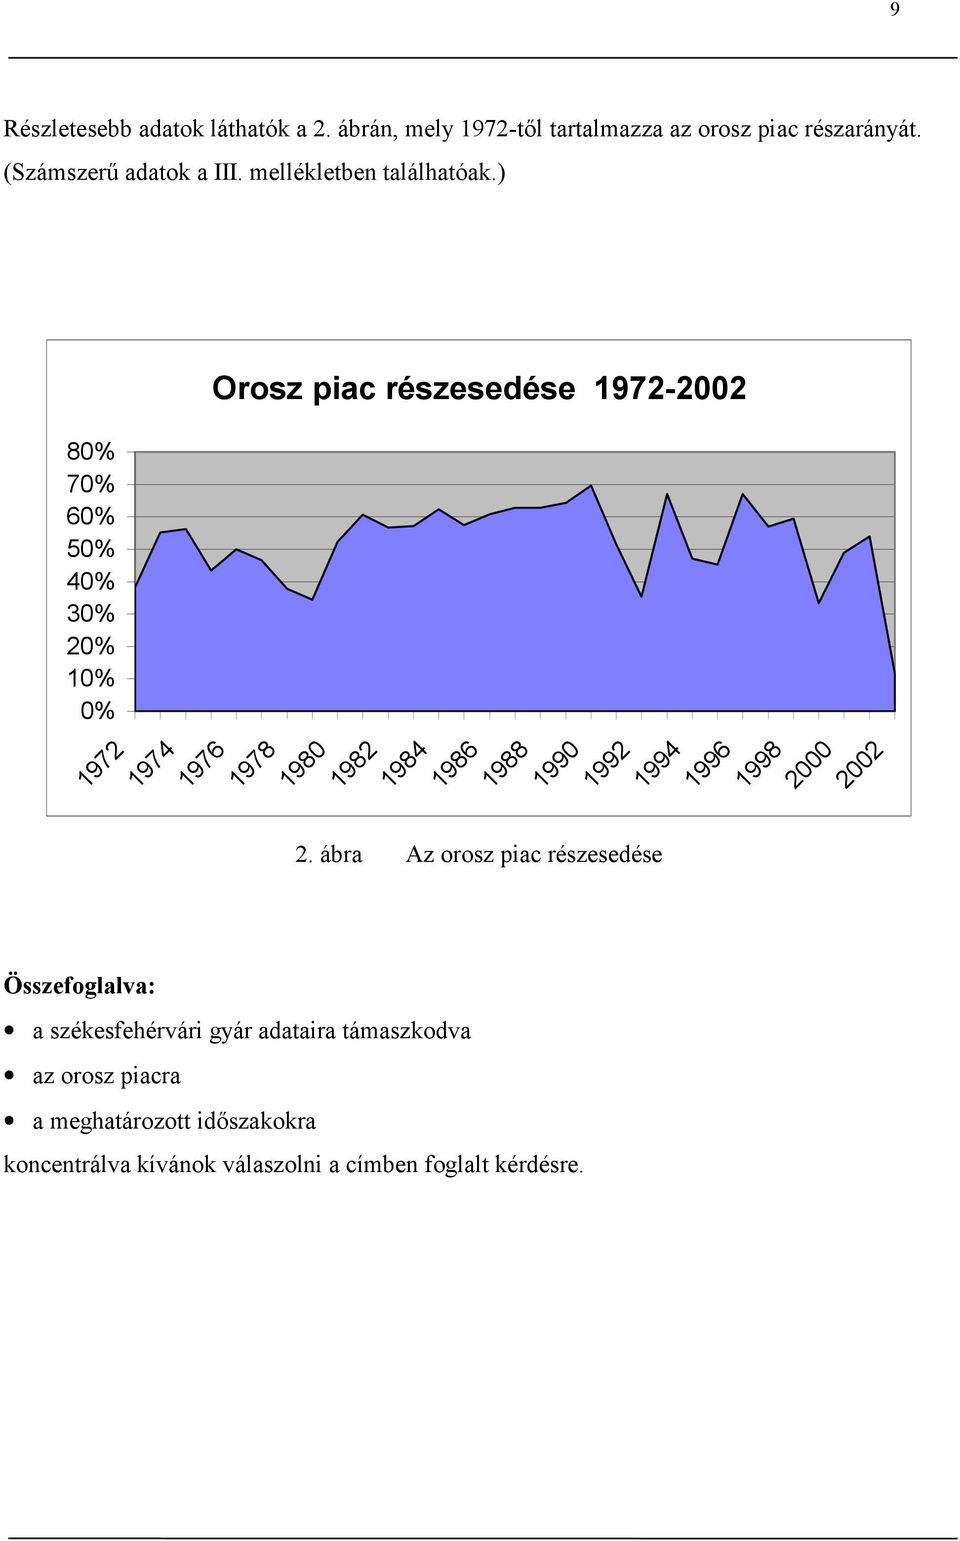 ) 80% 70% 60% 50% 40% 30% 20% 10% 0% 1972 1974 Összefoglalva: Orosz piac részesedése 1972-2002 1976 1978 1980 a